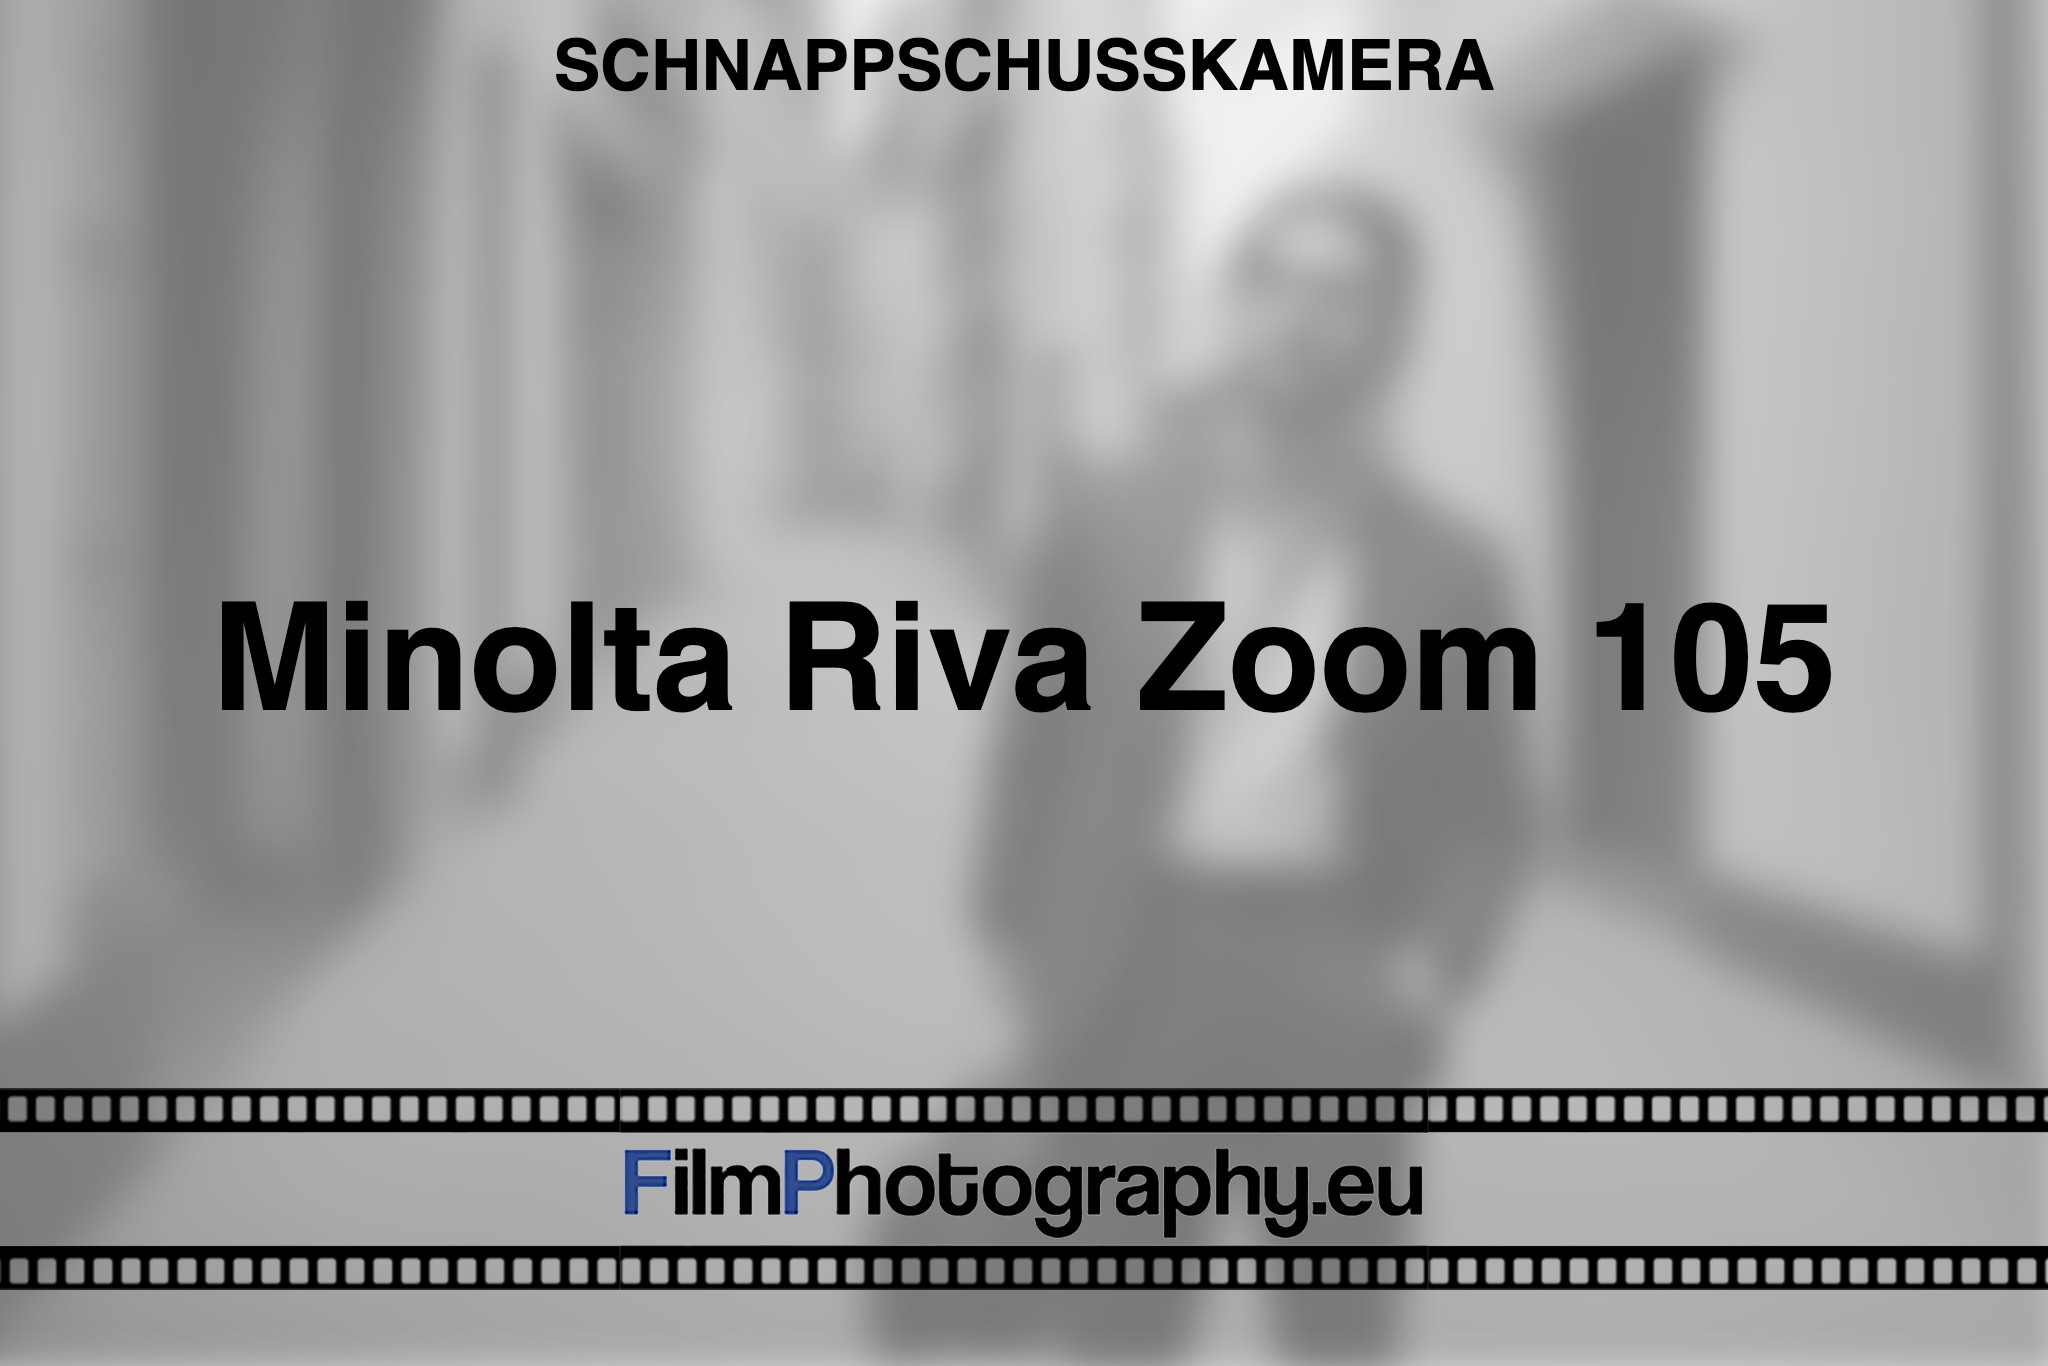 minolta-riva-zoom-105-schnappschusskamera-bnv